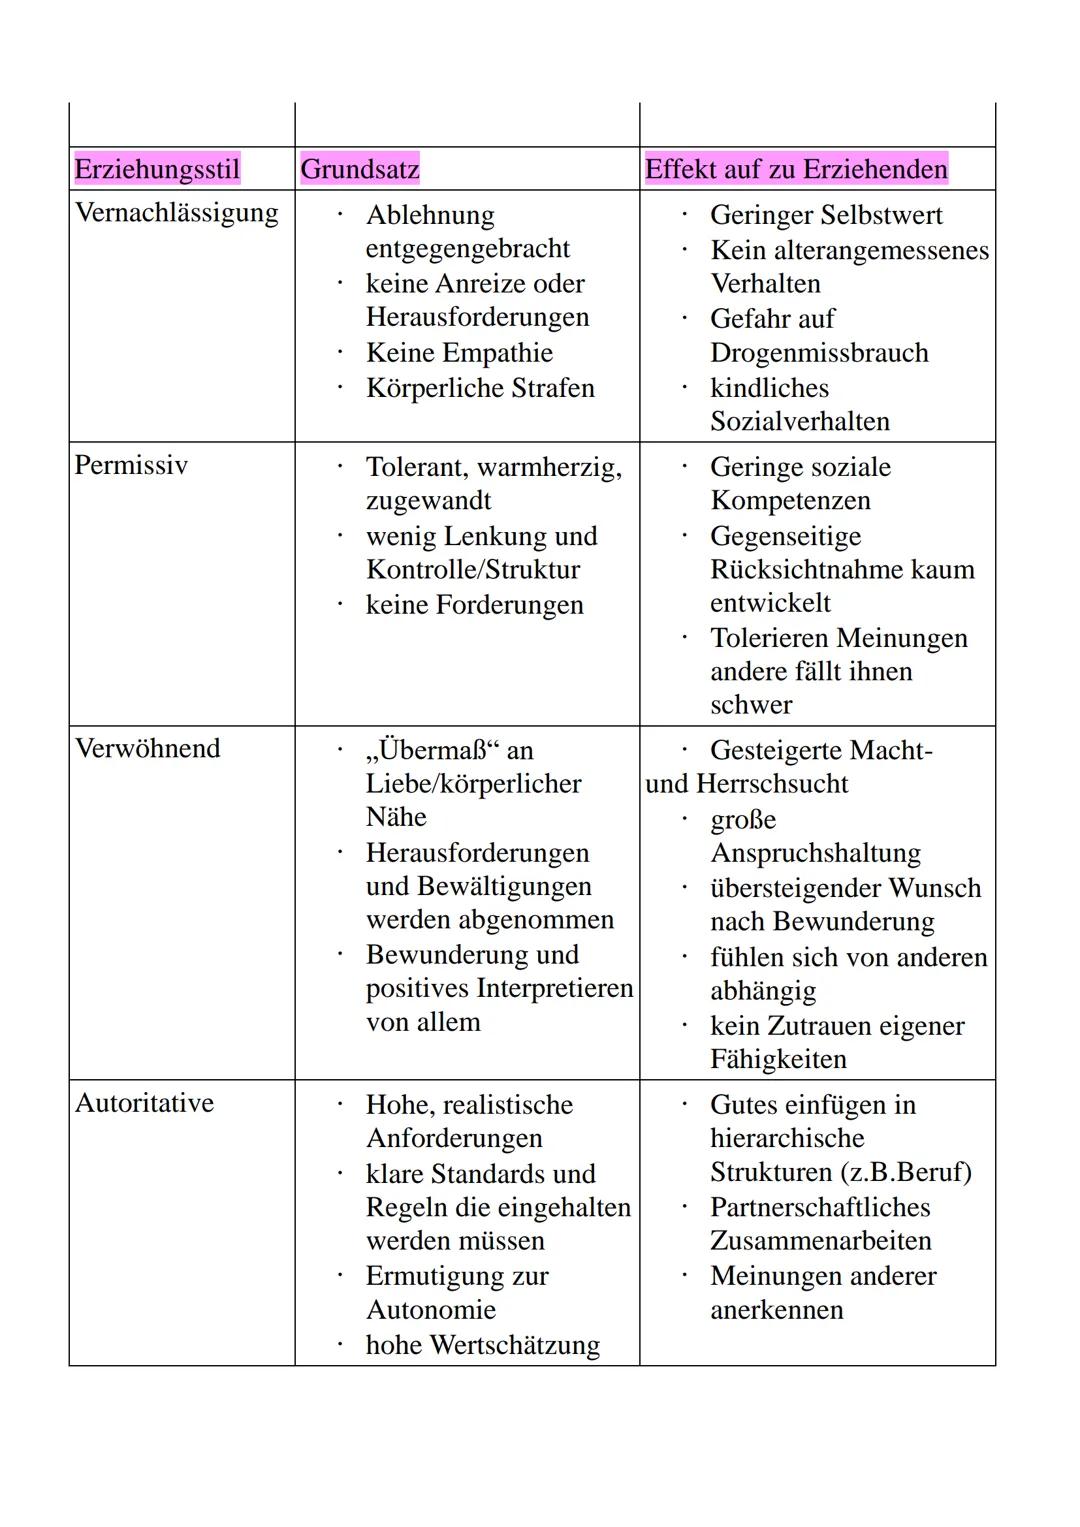 01.04.2020
Pädagogik
- Erziehungsstile -
Von: Luisa Groß
https://www.mamawissen.de/category/kleinkind/entwicklung-und-erziehung/ Inhaltsverz